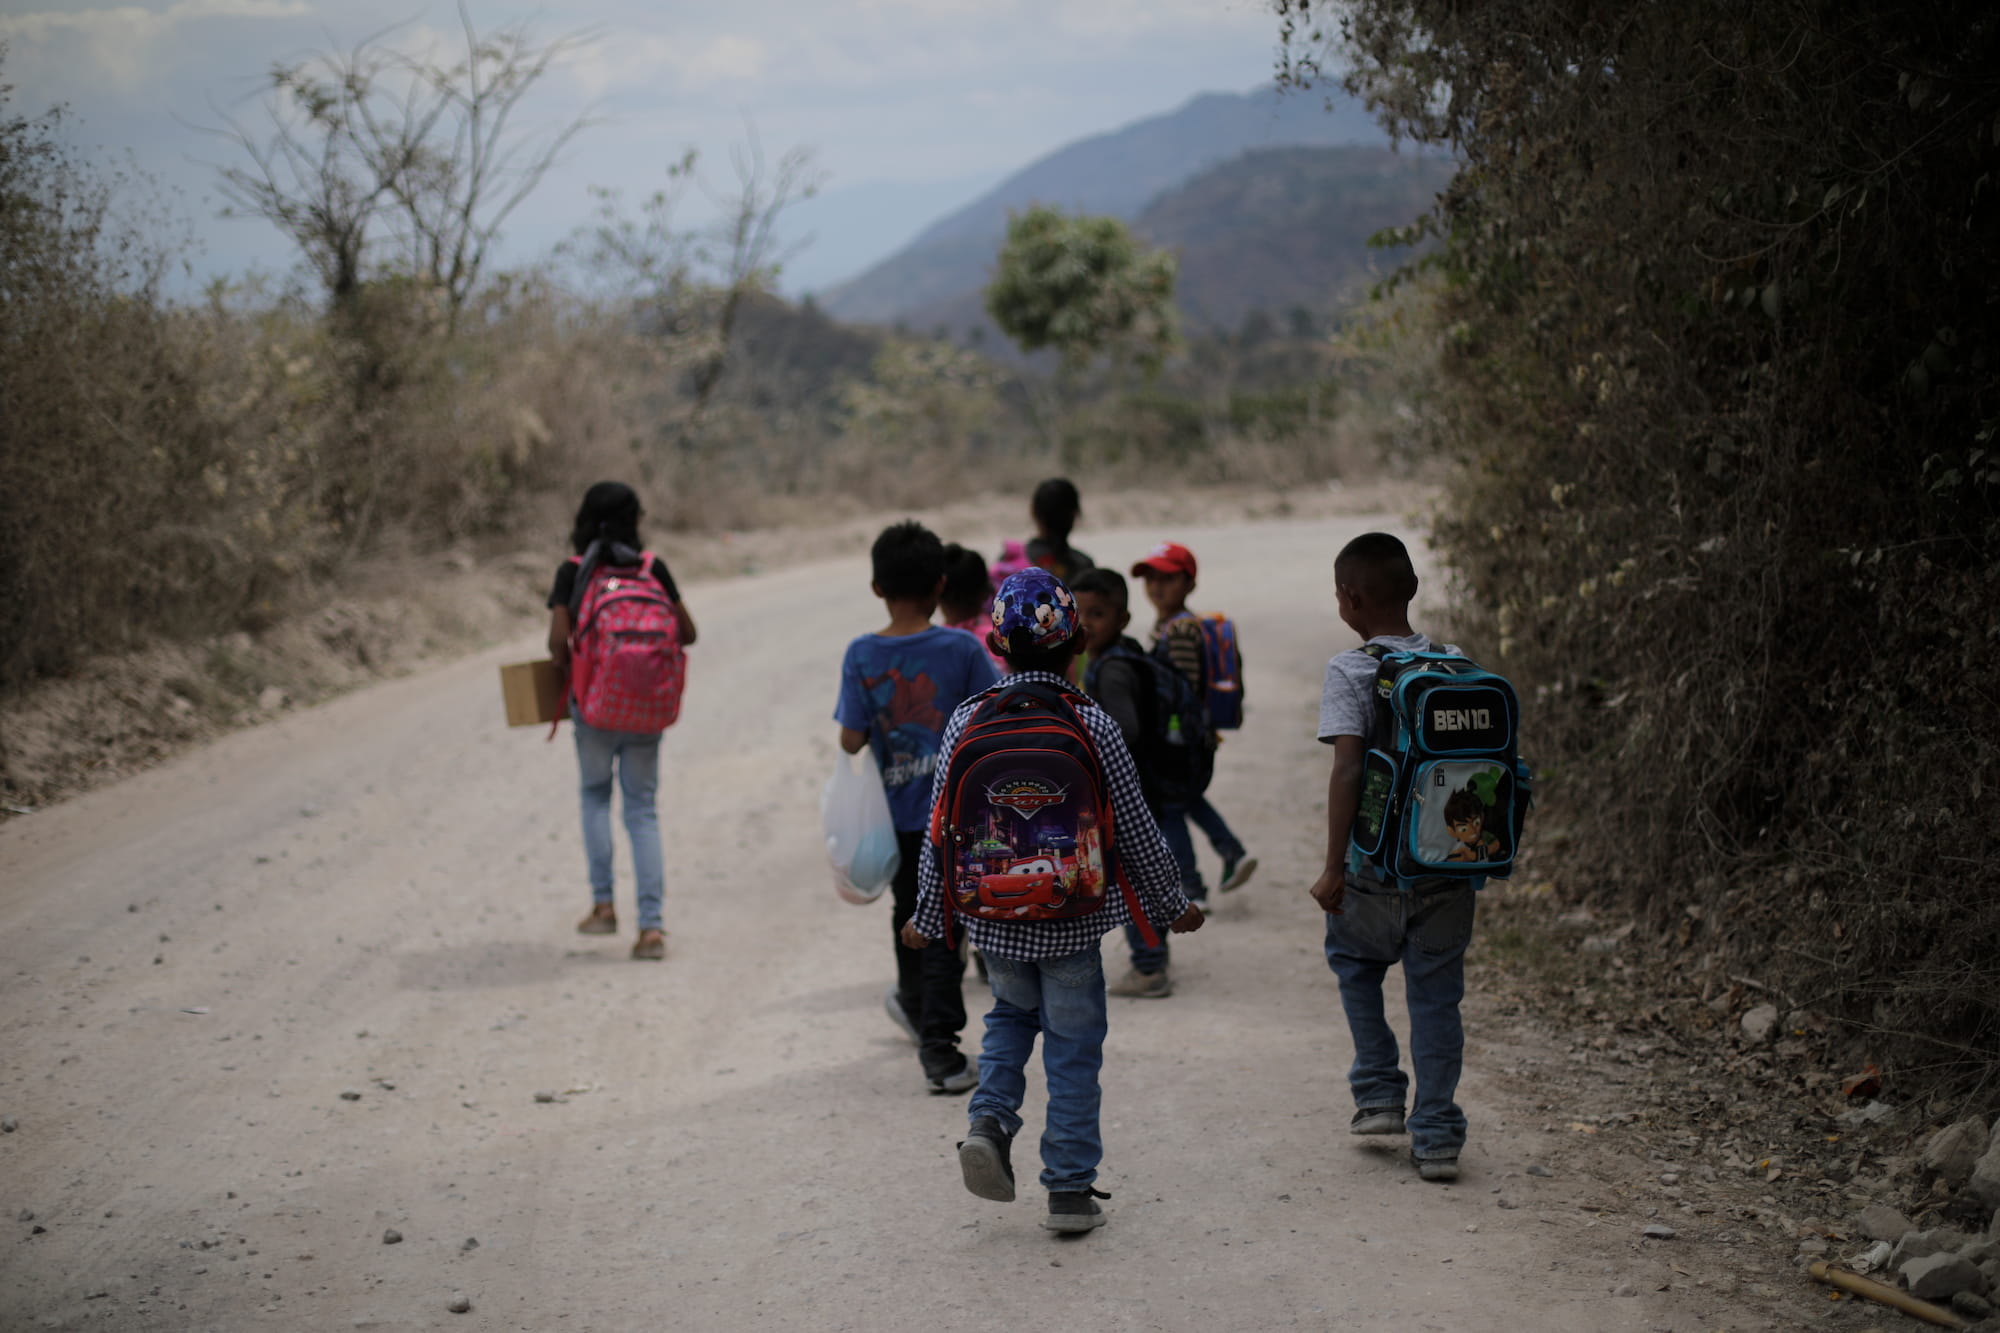 Los niños pasan por donde se llevó a cabo la masacre al salir de sus clases. Foto CC/Jorge Cabrera